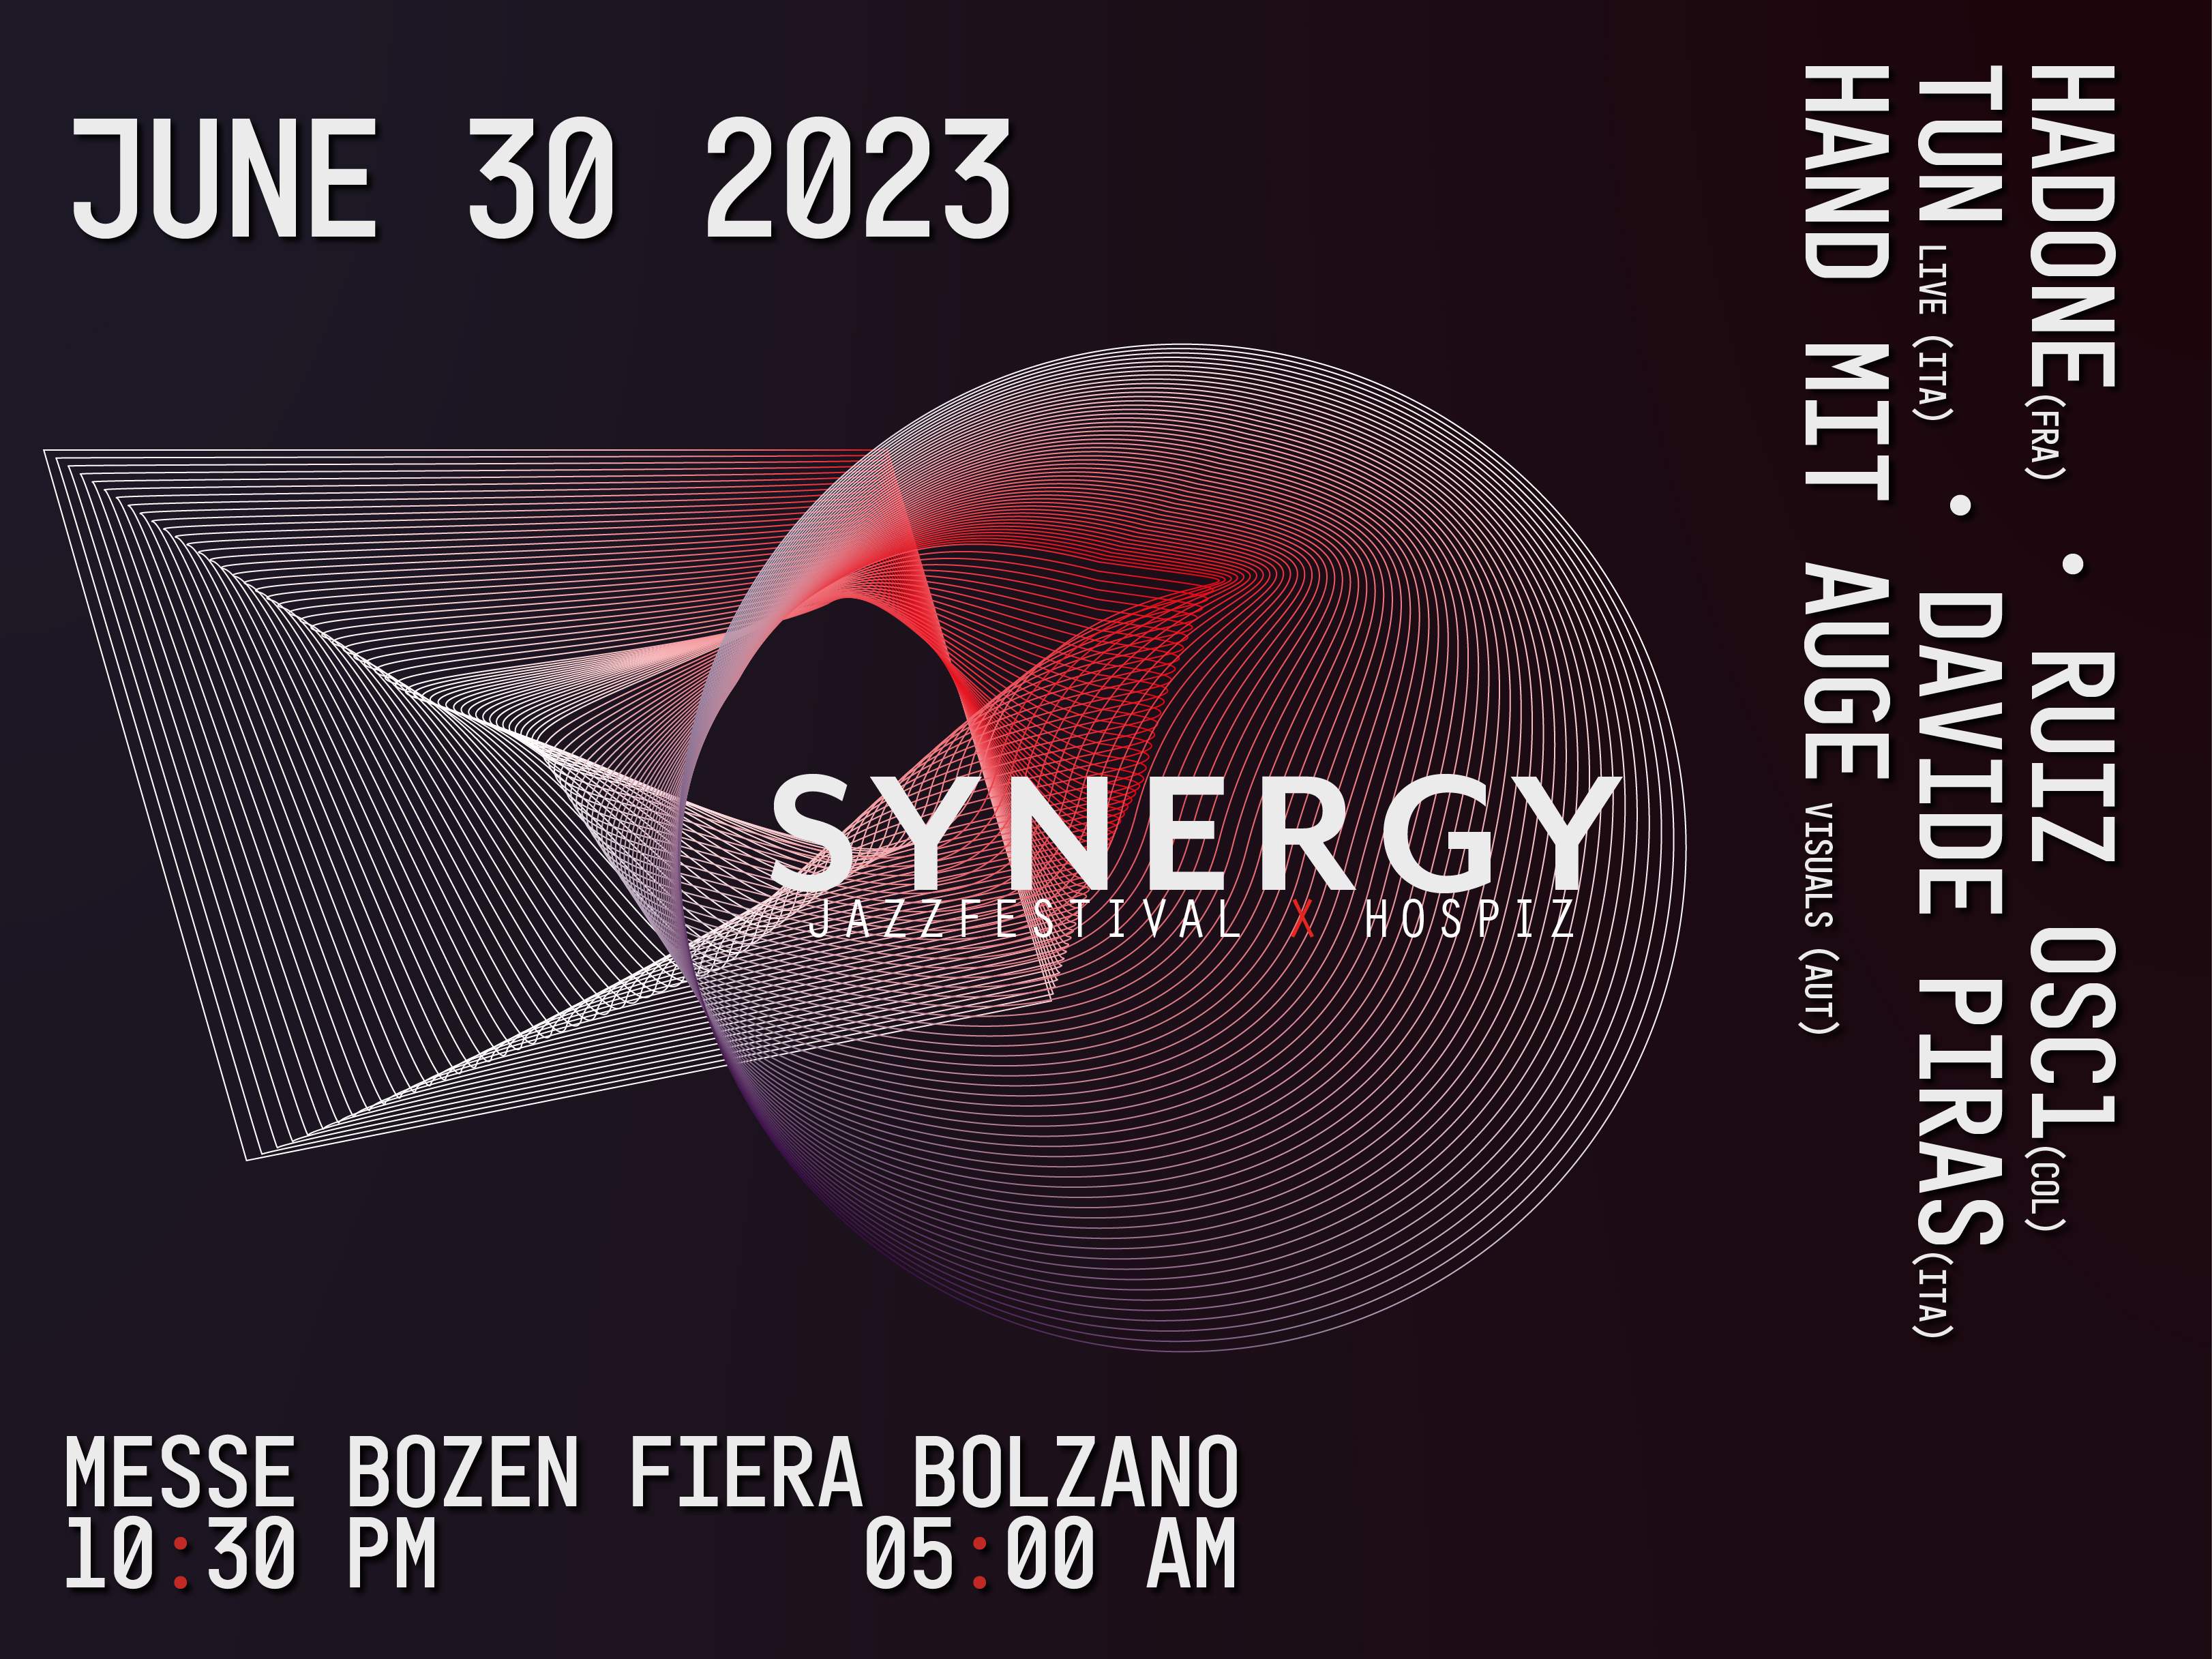 synergy_2023_4x3_ok_low.jpg